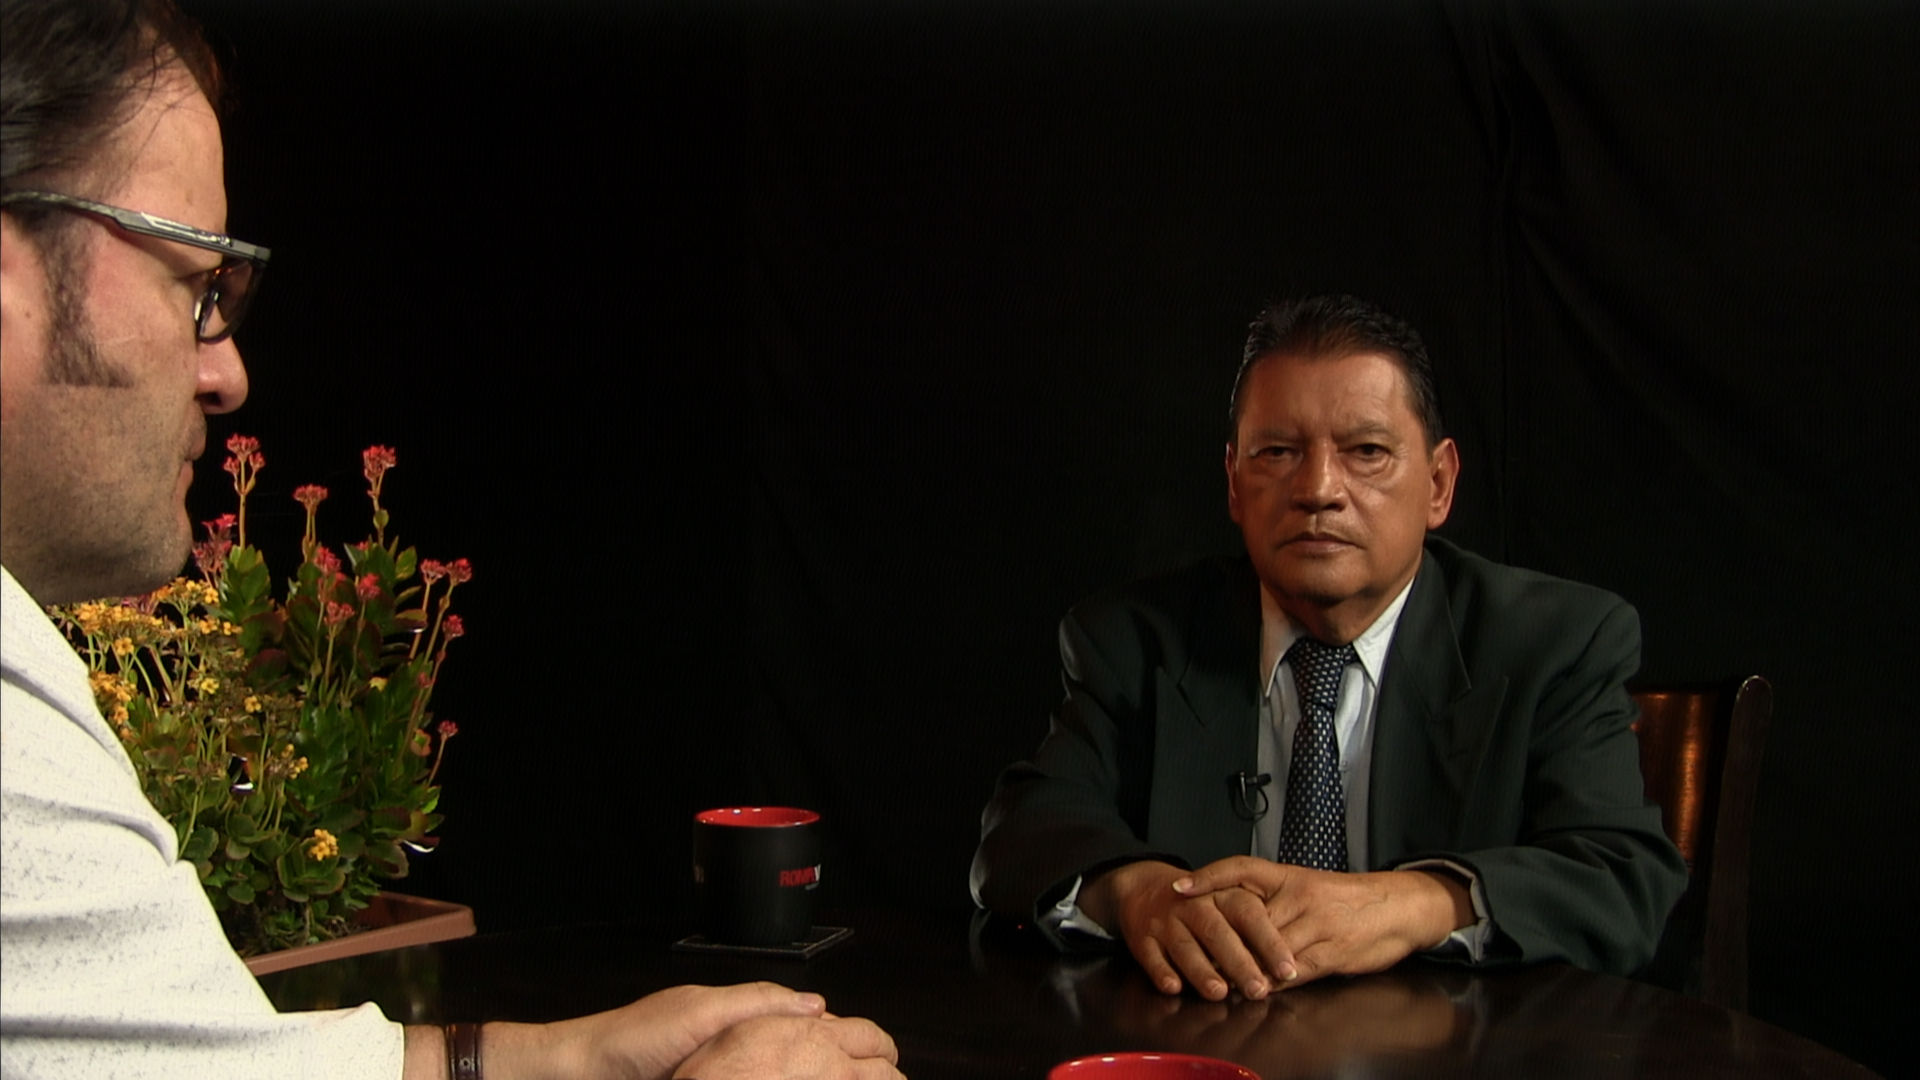 Perspectivas - Denuncia contra Juan Sabines, exgobernador de Chiapas - 29/3/2017